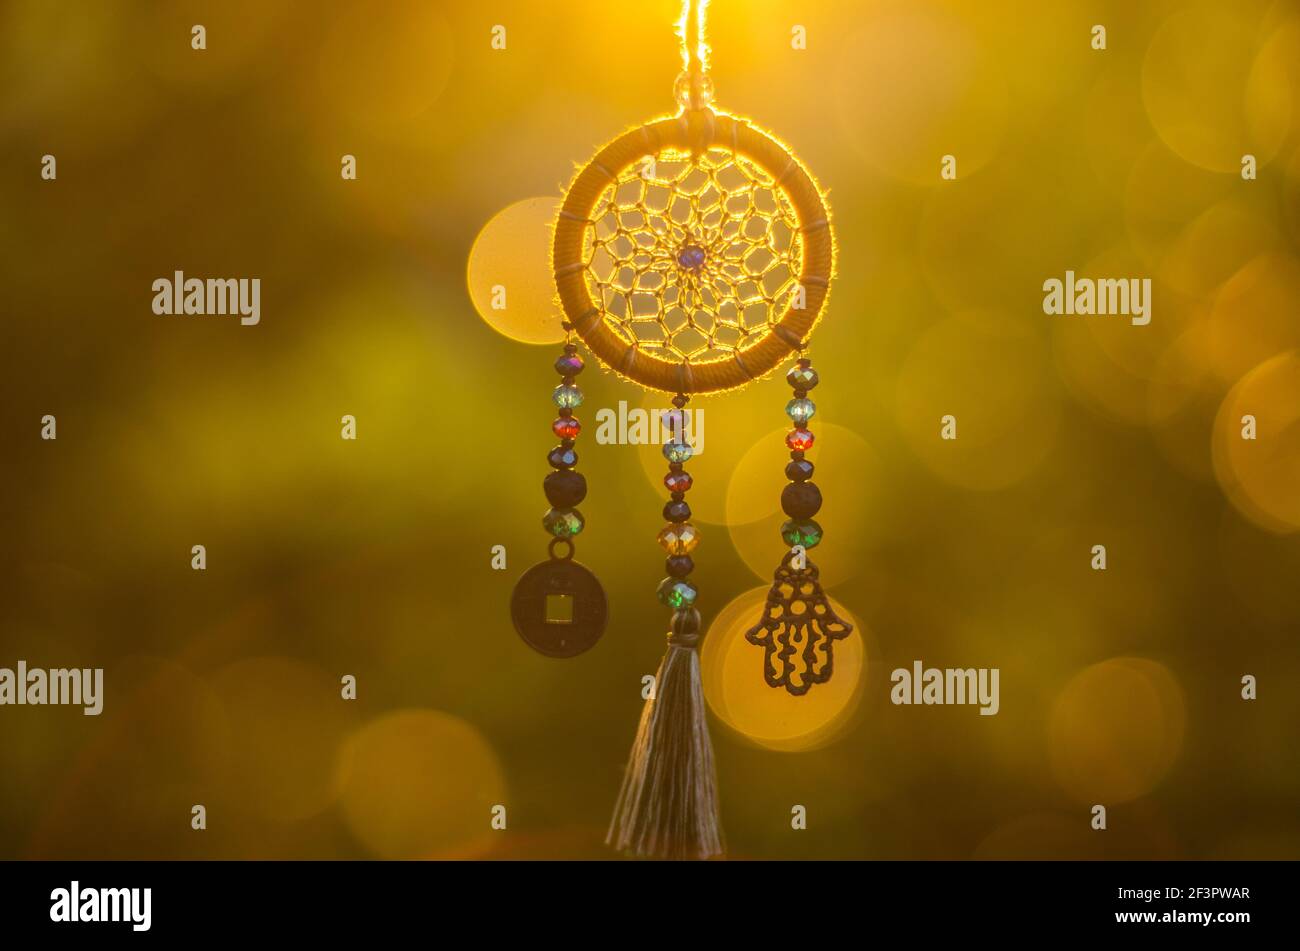 Nahaufnahme der spirituellen Halskette mit heiligen Geometrie Kreis mit Bokeh Hintergrund beleuchtet durch Sonnenuntergang goldenes Licht Stockfoto